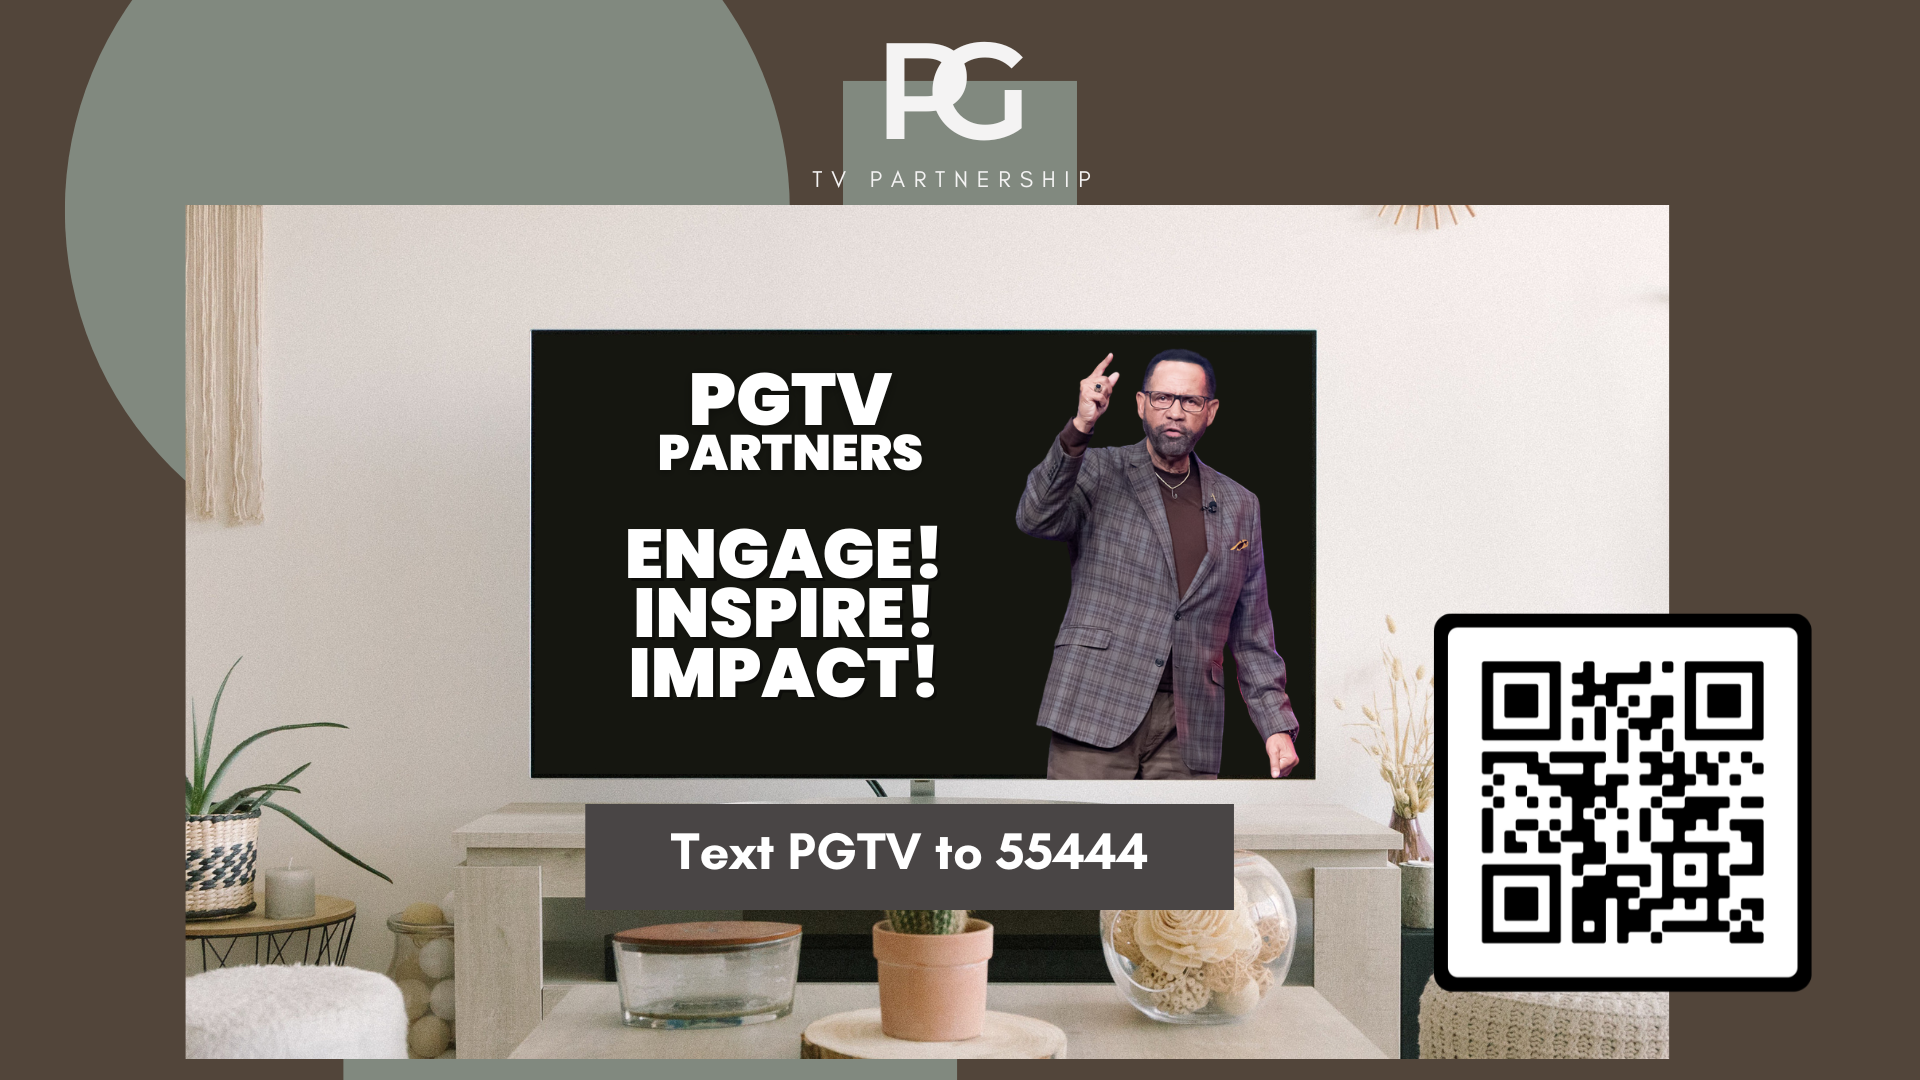 PGTV Partnership Text PGTV to 55444